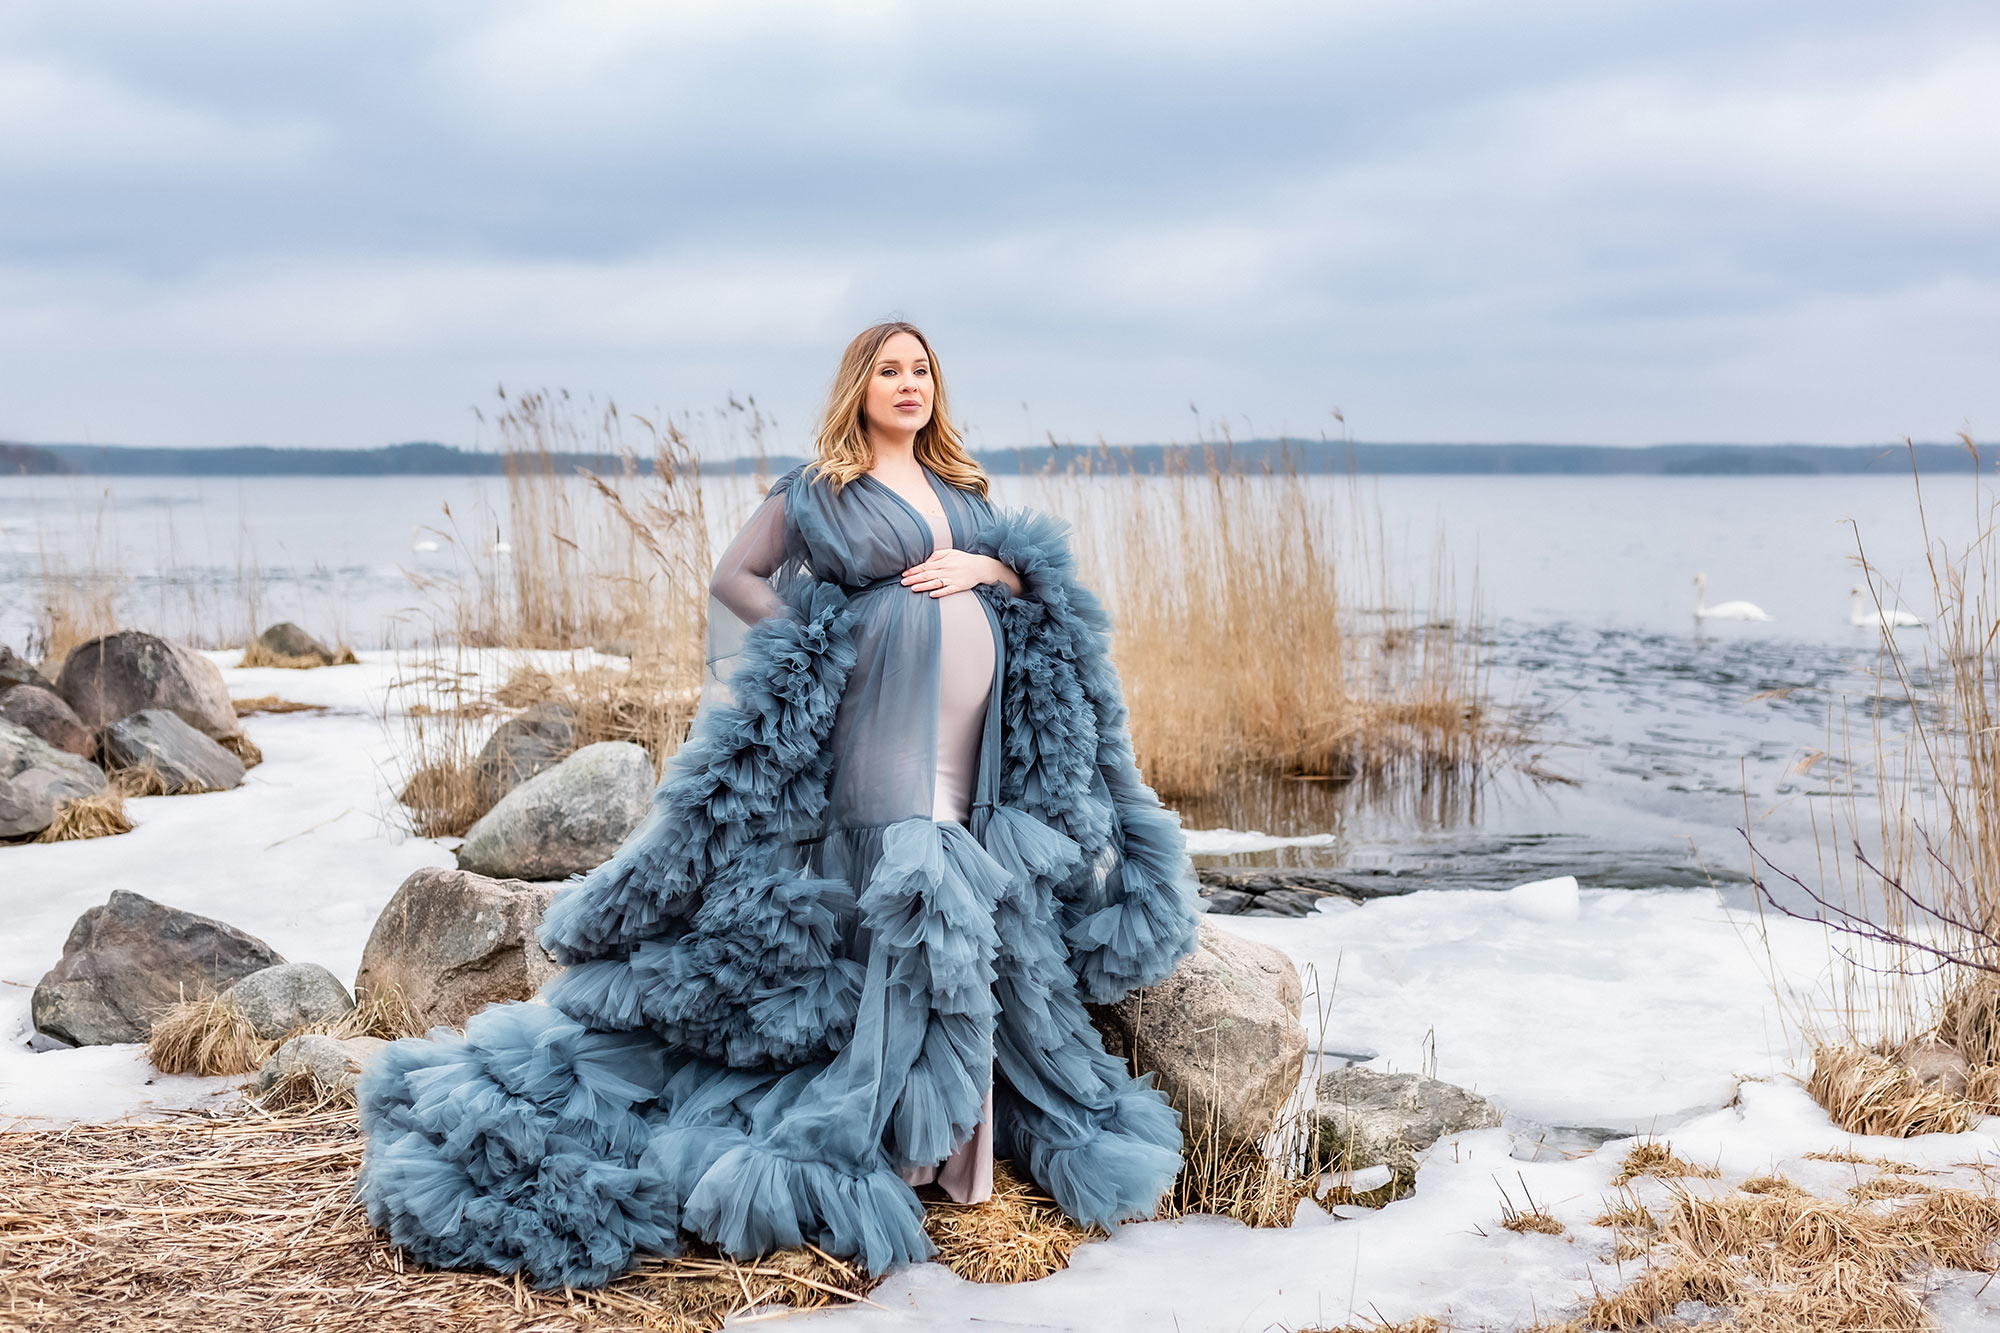 Gravidfotografering vid havet på vintern. Den gravida kvinnan har på sig en elegant gråblå klänning och står bland stora stenar och vass. Isen ligger på delar av havet och där havet är öppet simmar några svanar.